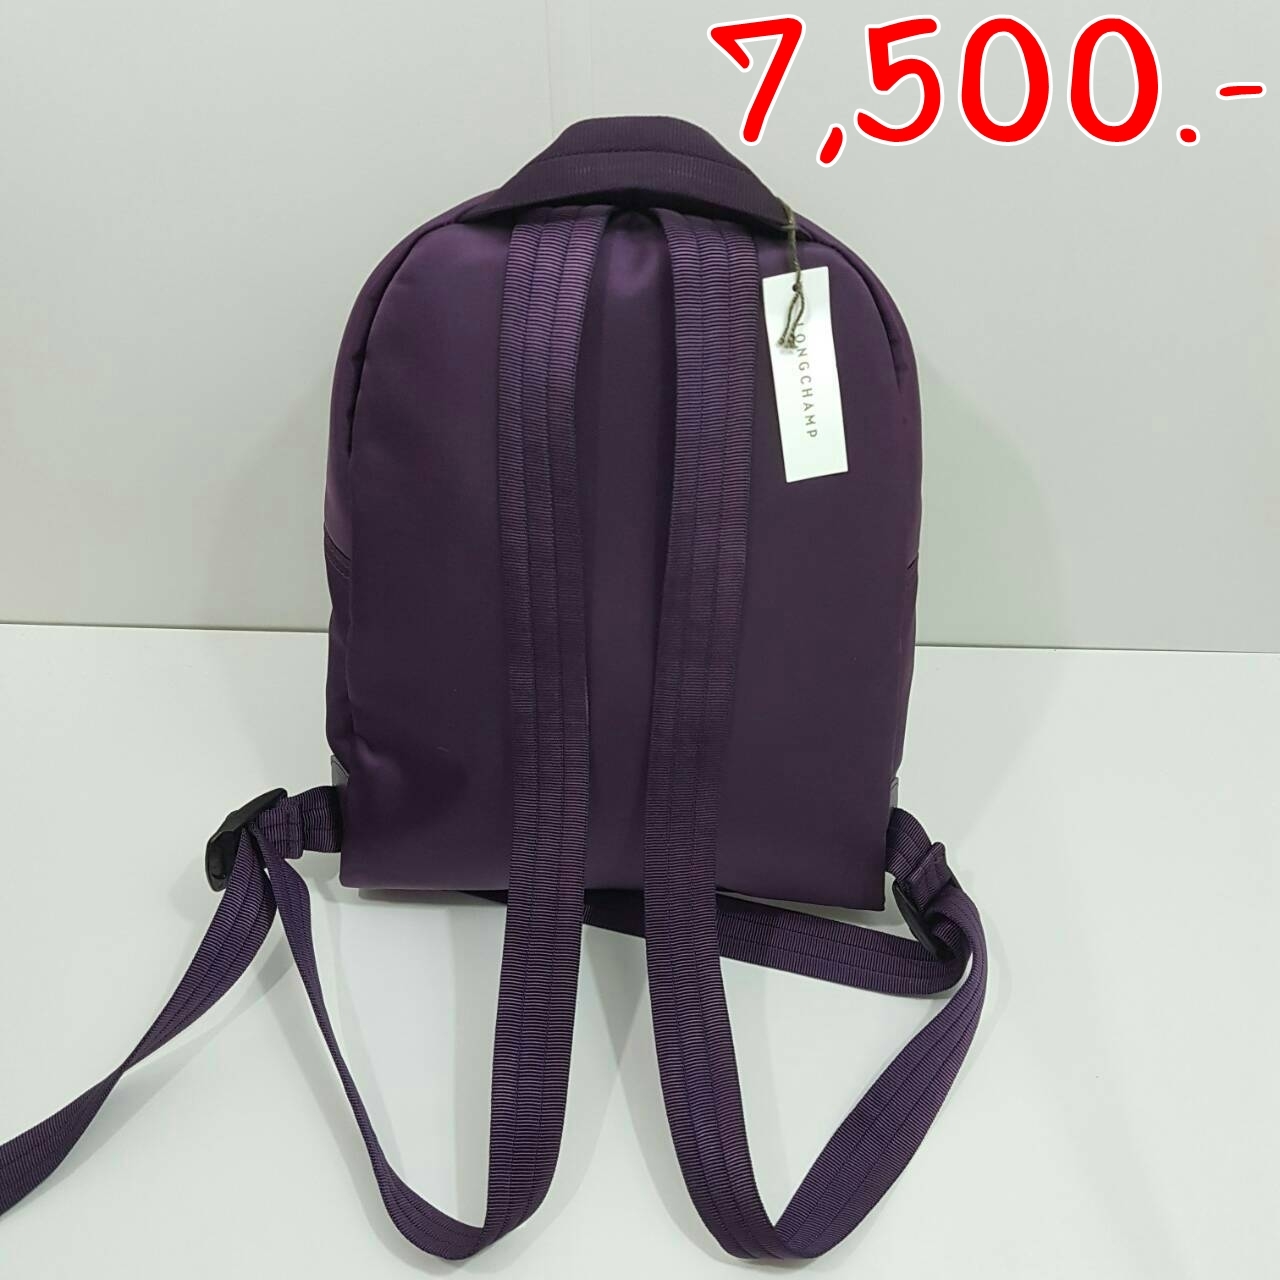 "ราคา 7,500 บา ยี่ห้อ longchamp le pliage neo backpack สี bilberry ขนาด 26×32×12 cm สภาพ 100% ของใหม่ ไม่เคยใช้ "